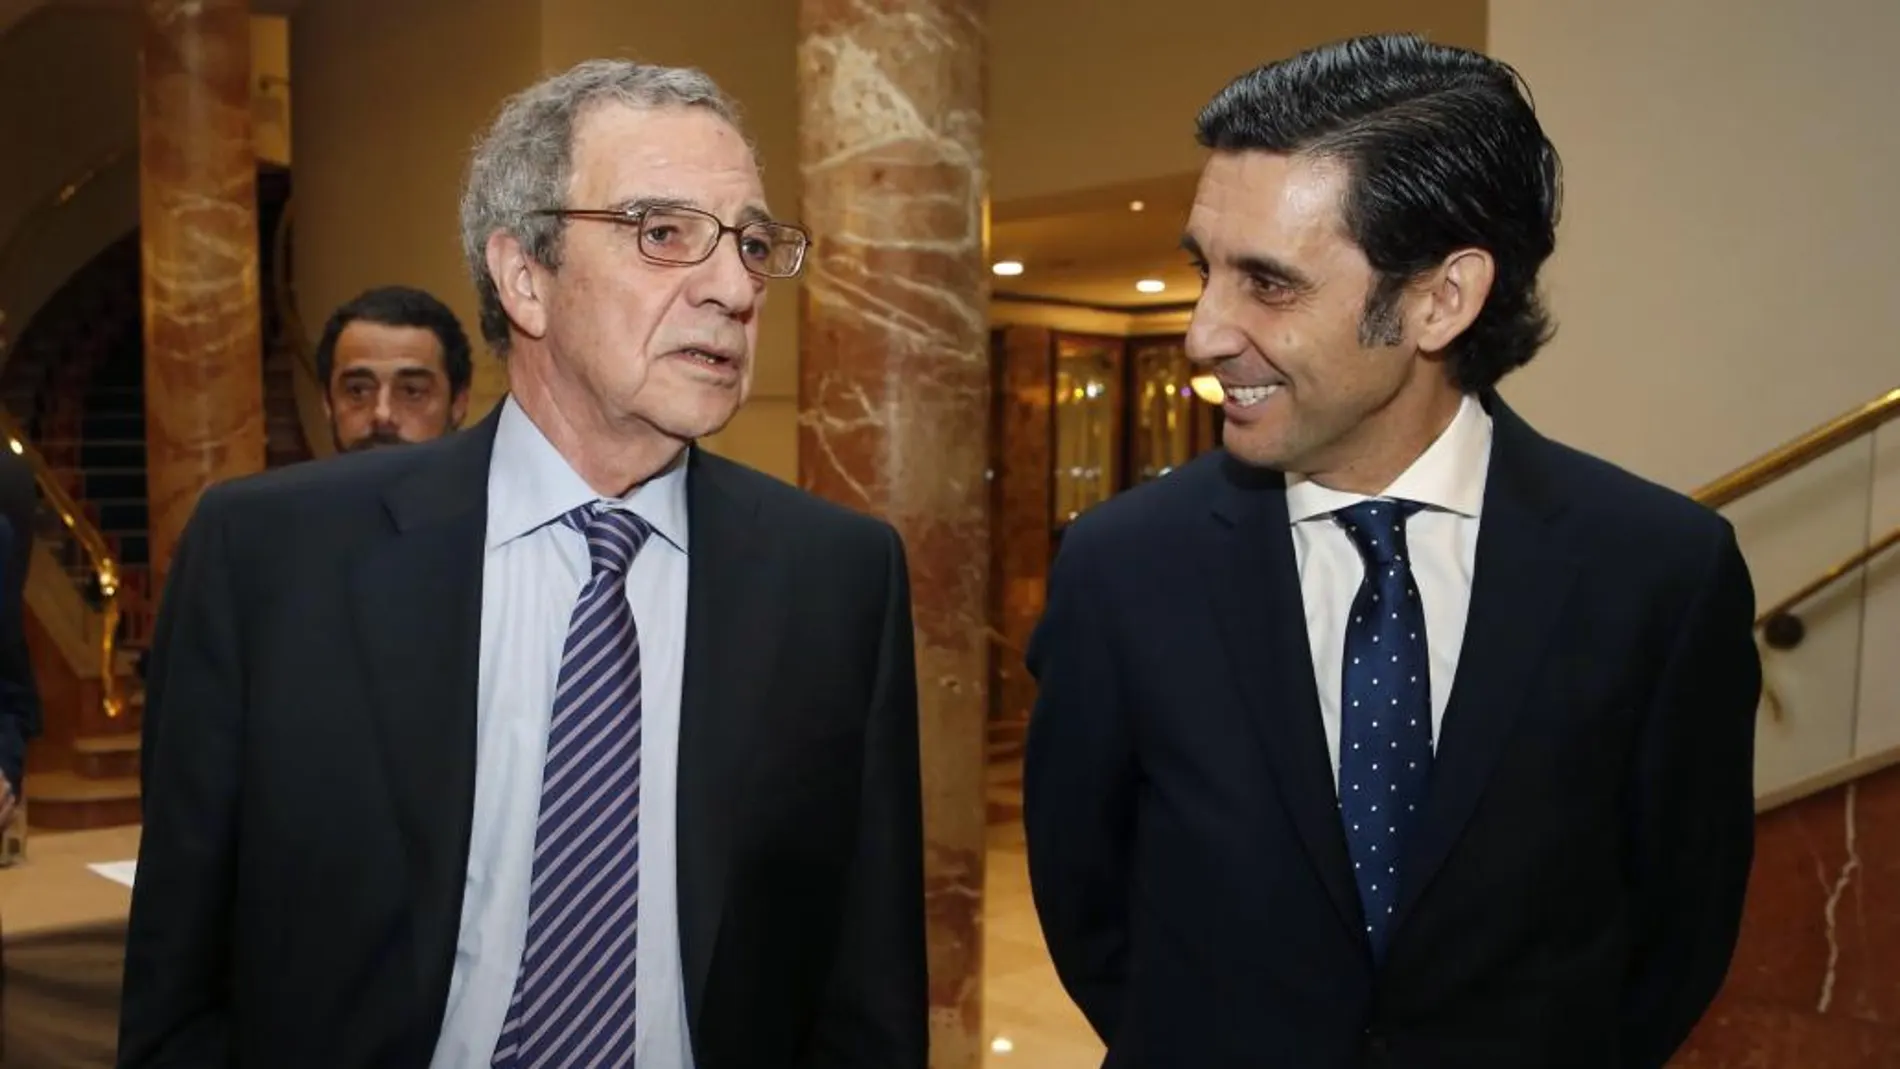 El presidente de la Fundación ProFuturo, César Alierta (izqda.) junto al presidente de Telefónica, José María Álvarez-Pallete, en una imagen de 2019